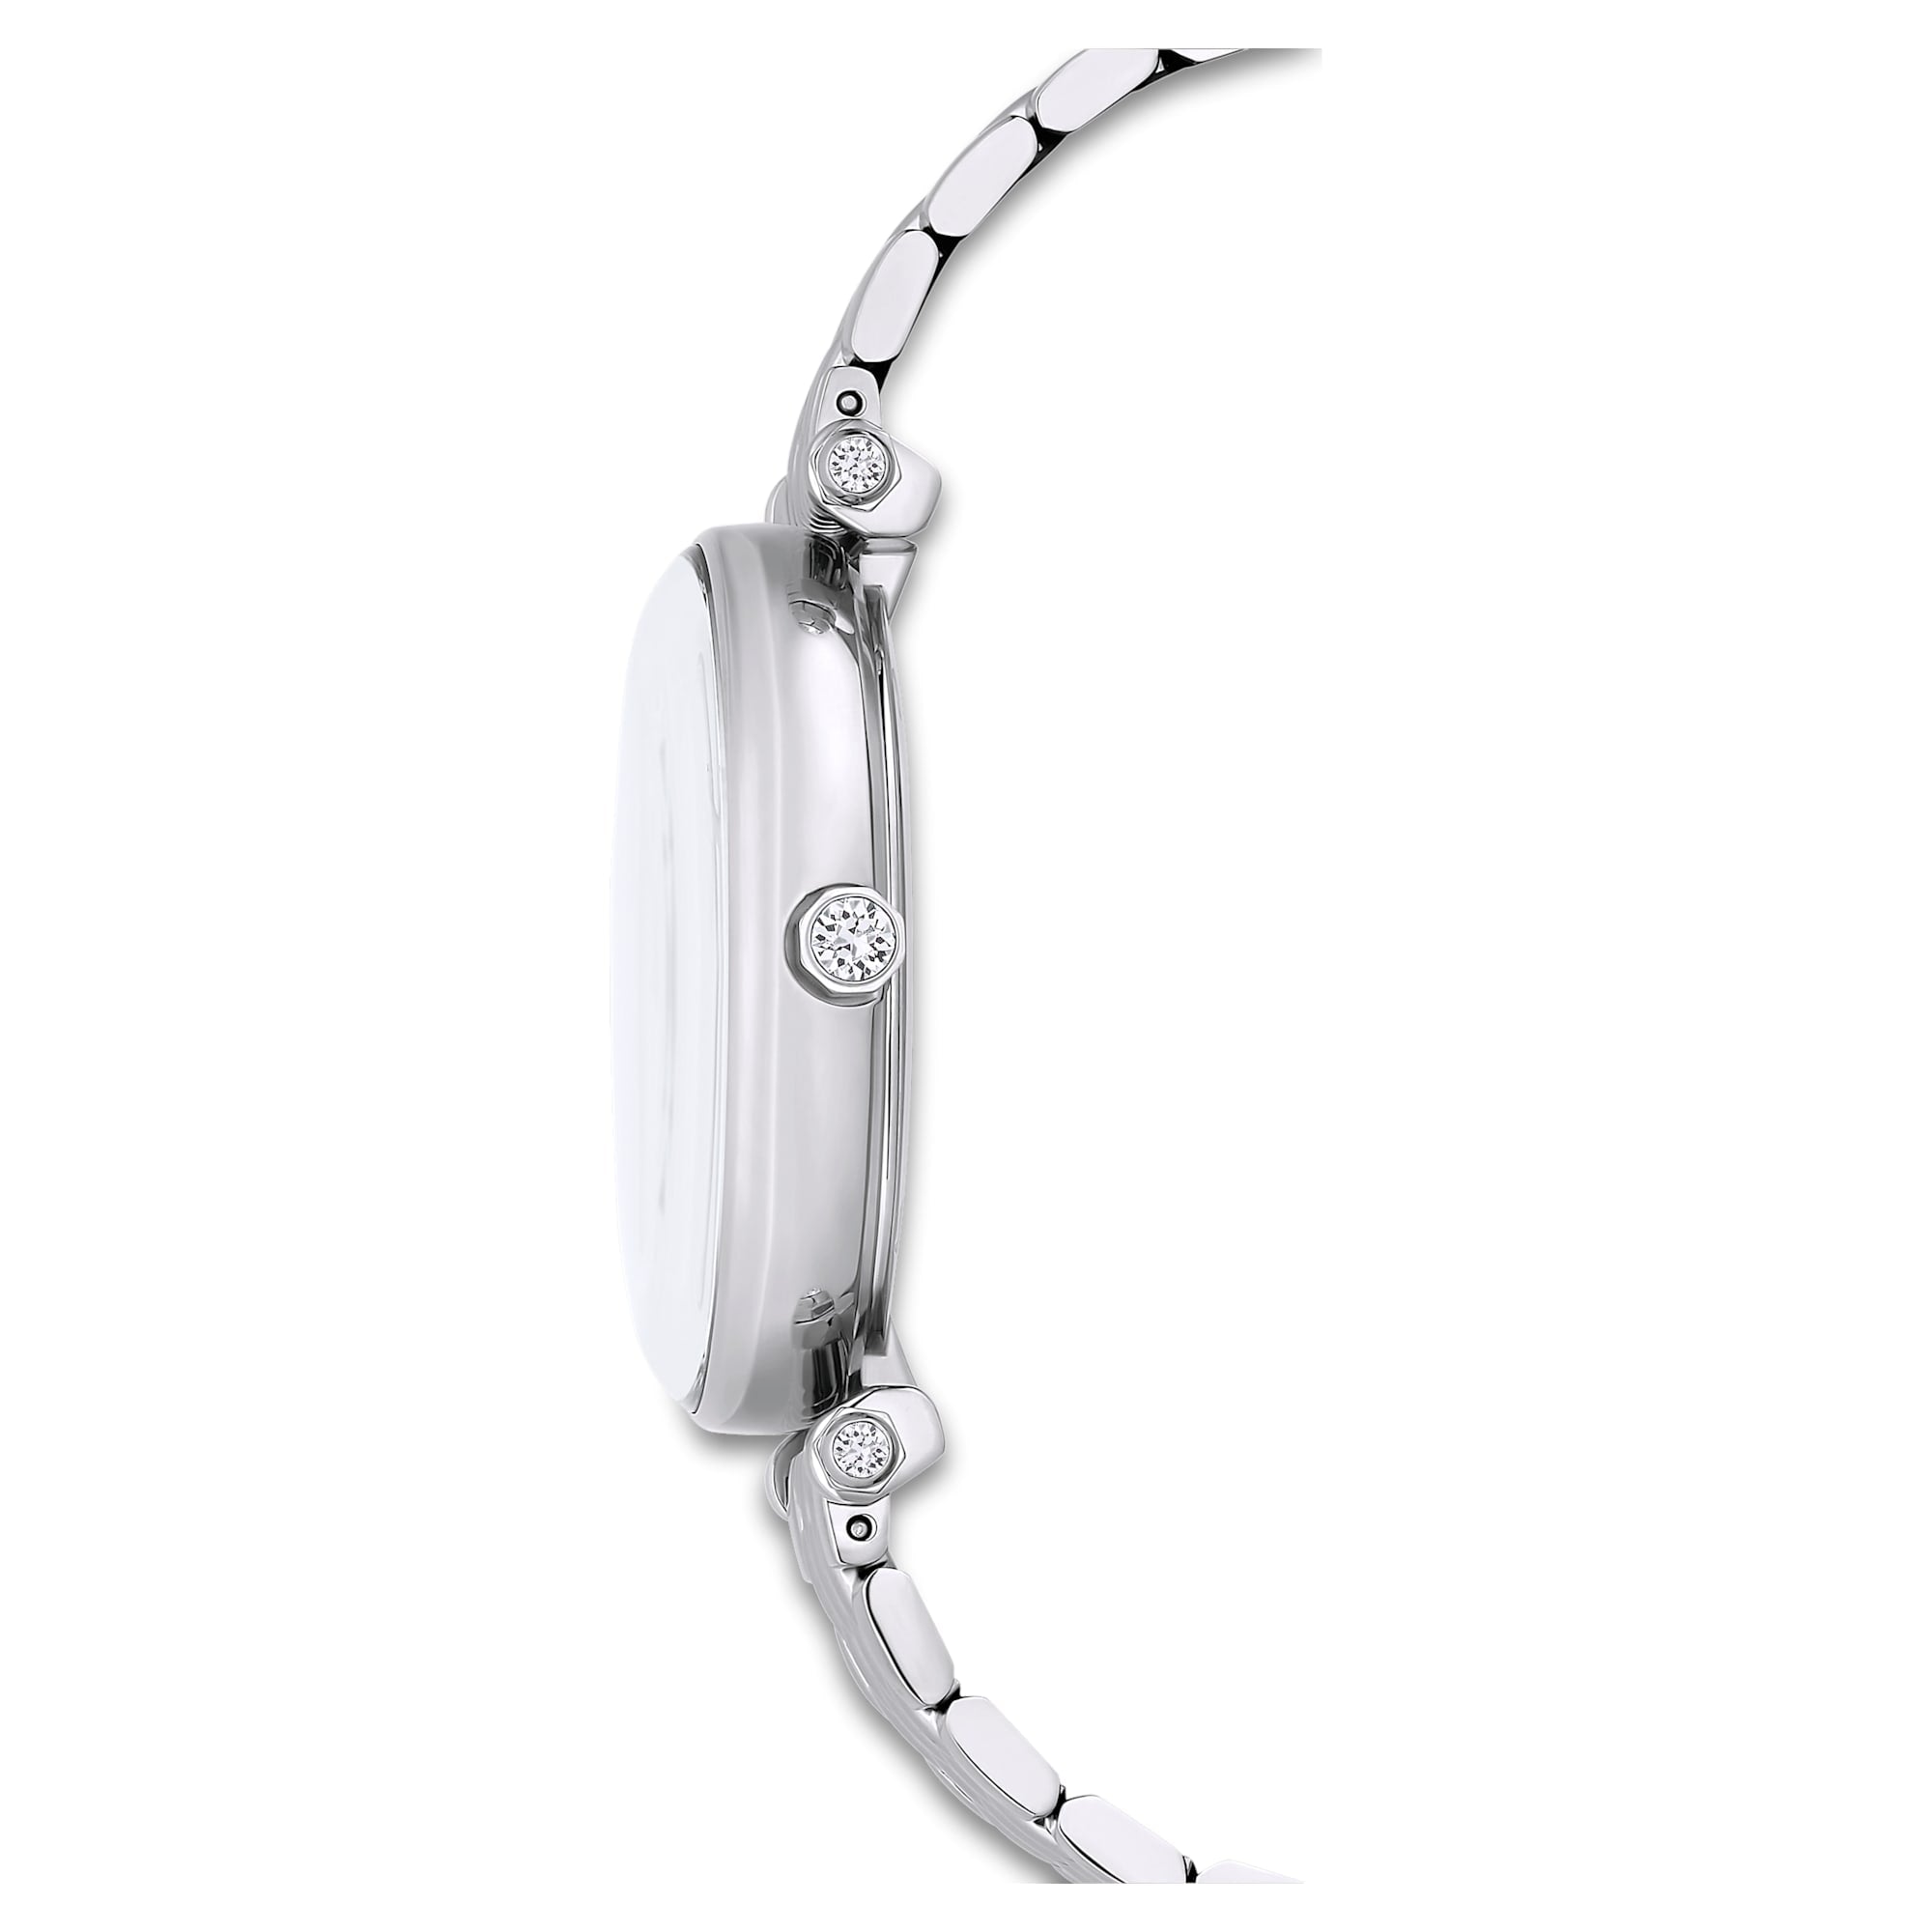 Crystalline Wonder - Weißes Silber - Uhr - Swarovski